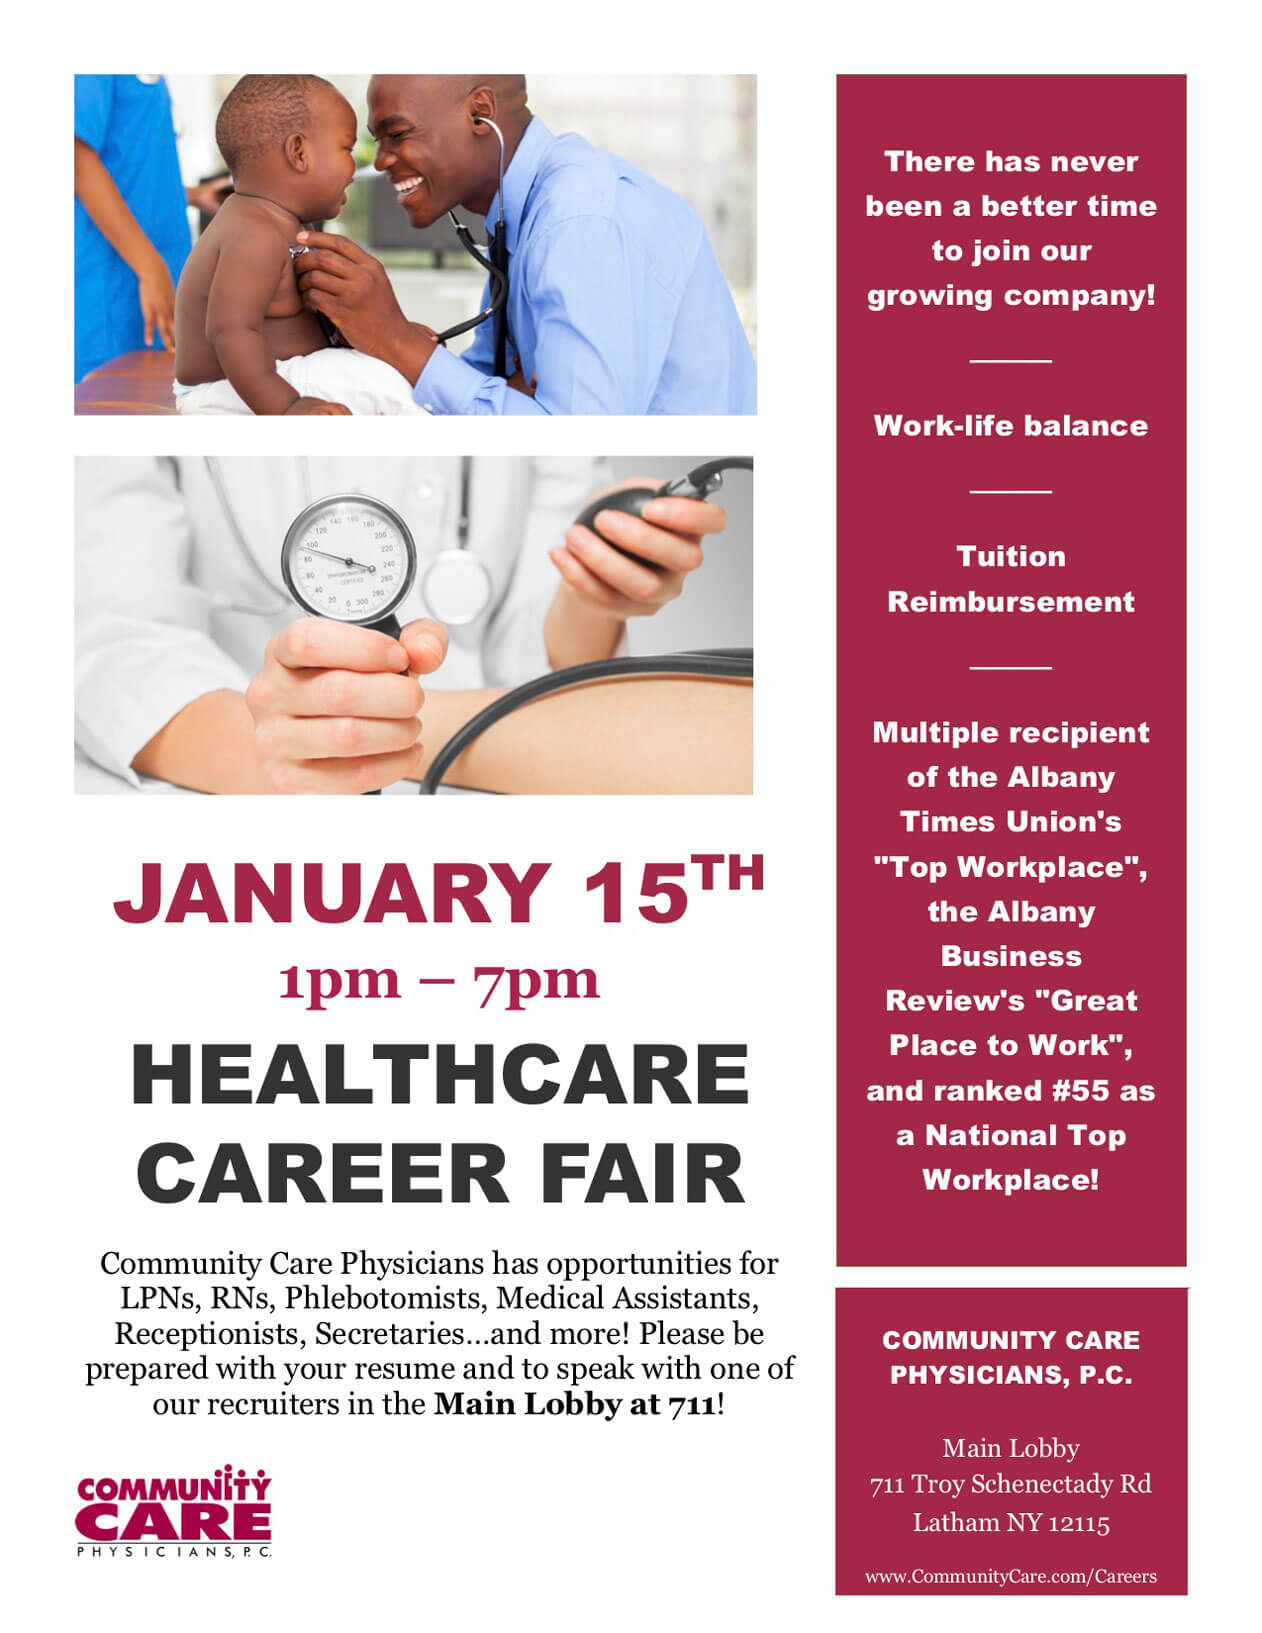 CCP Healthcare Career Fair on Wednesday, January 15 at 1pm.